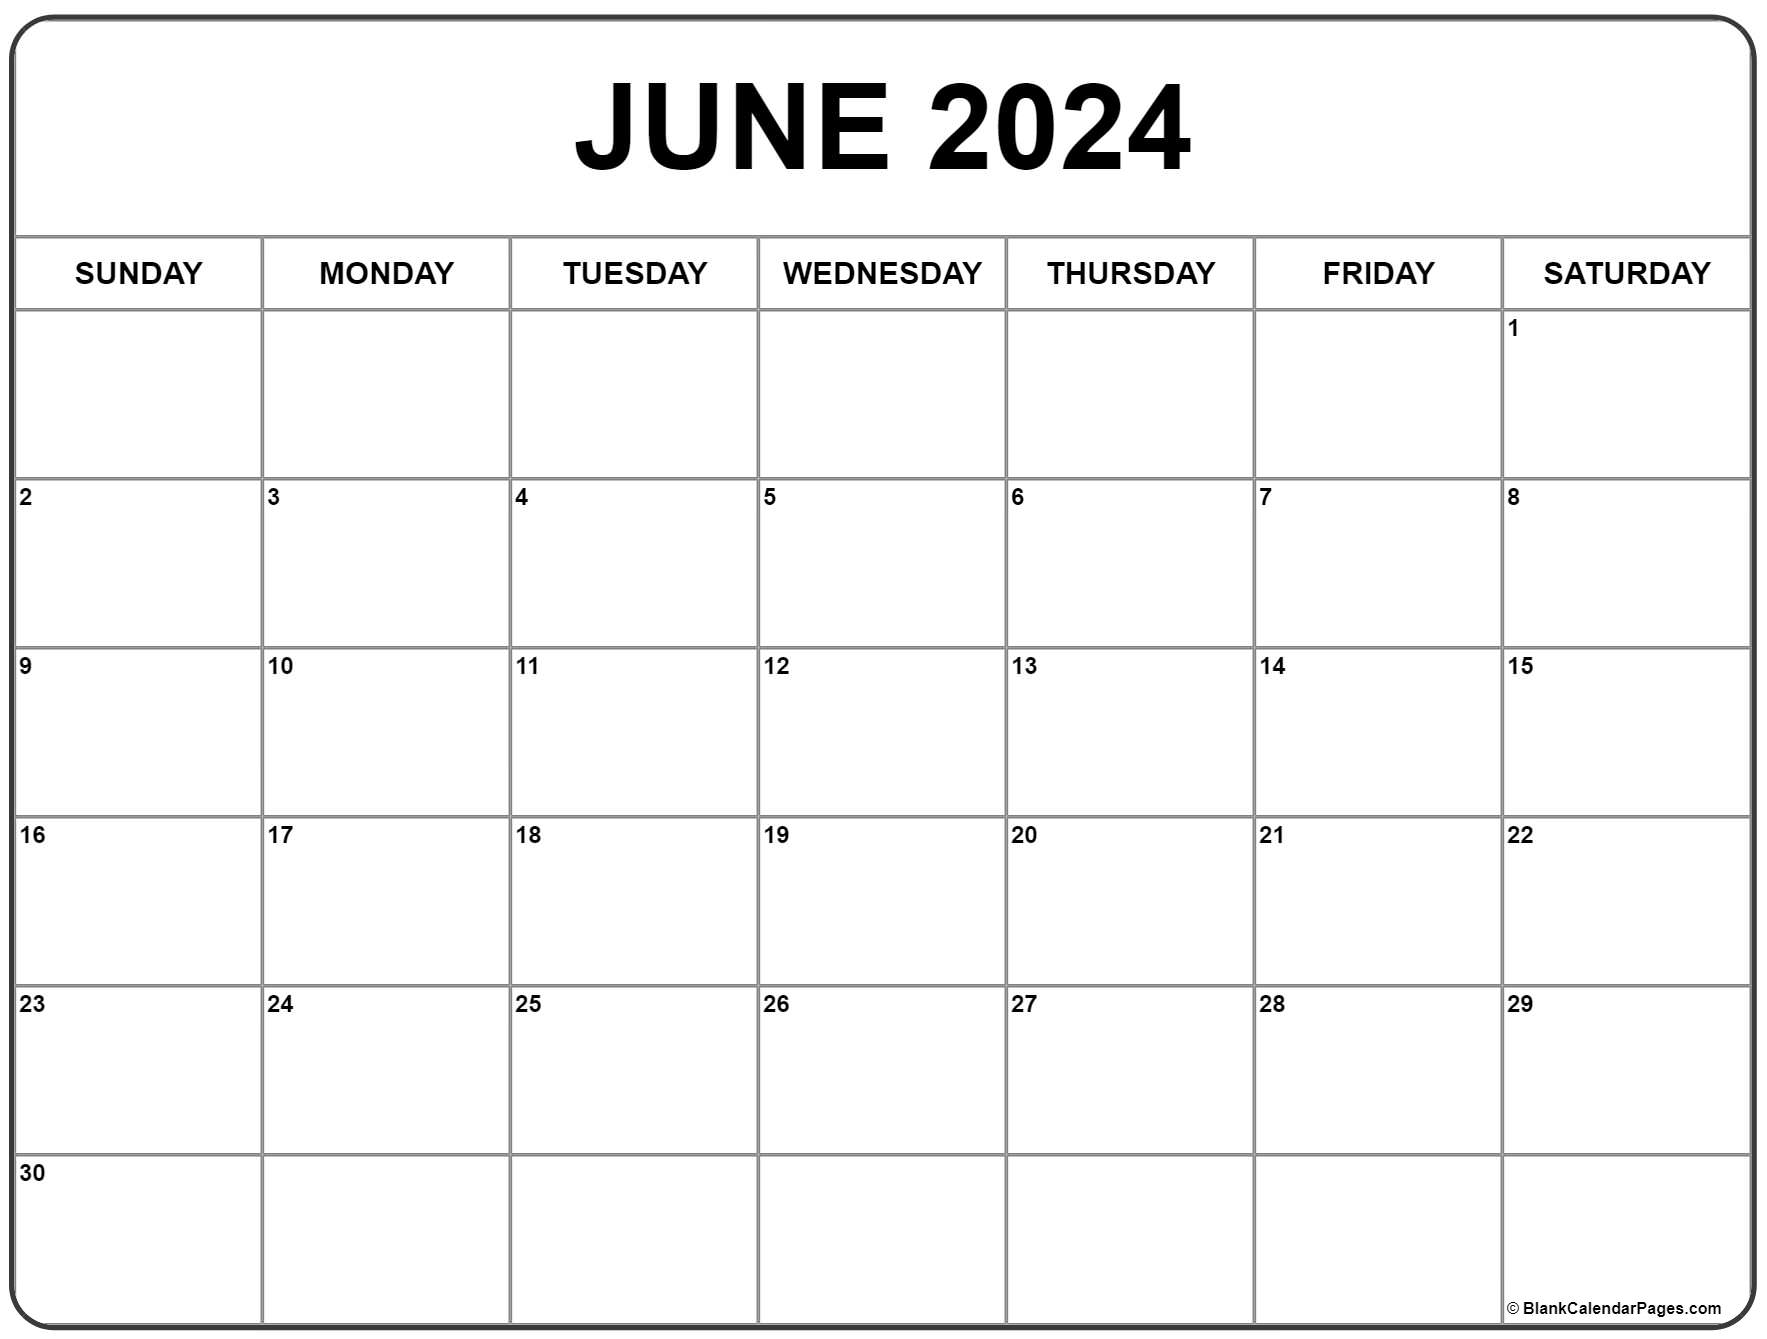 June 2024 Calendar | Free Printable Calendar for June Free Printable Calendar 2024